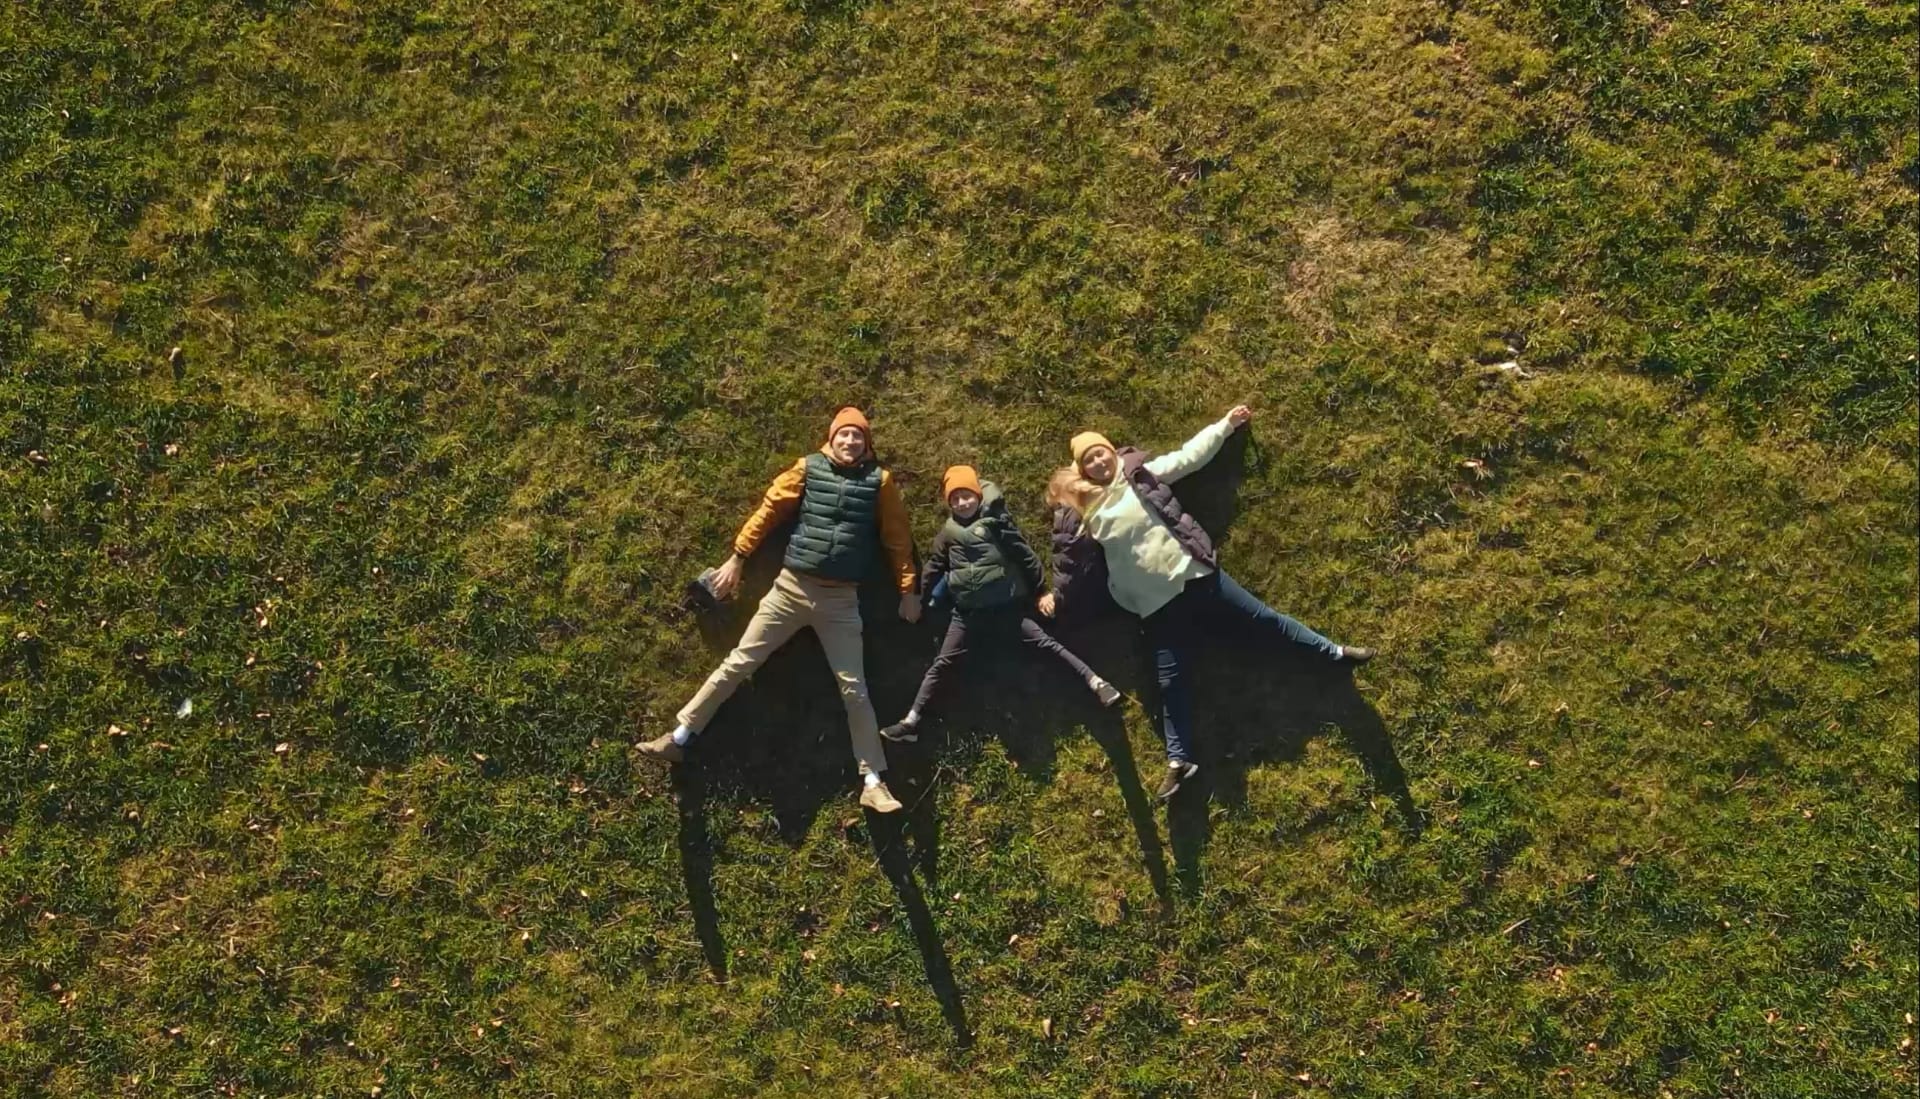 Perhe makaa nurmikollakäsi kädessä ylhäältä kuvattuina